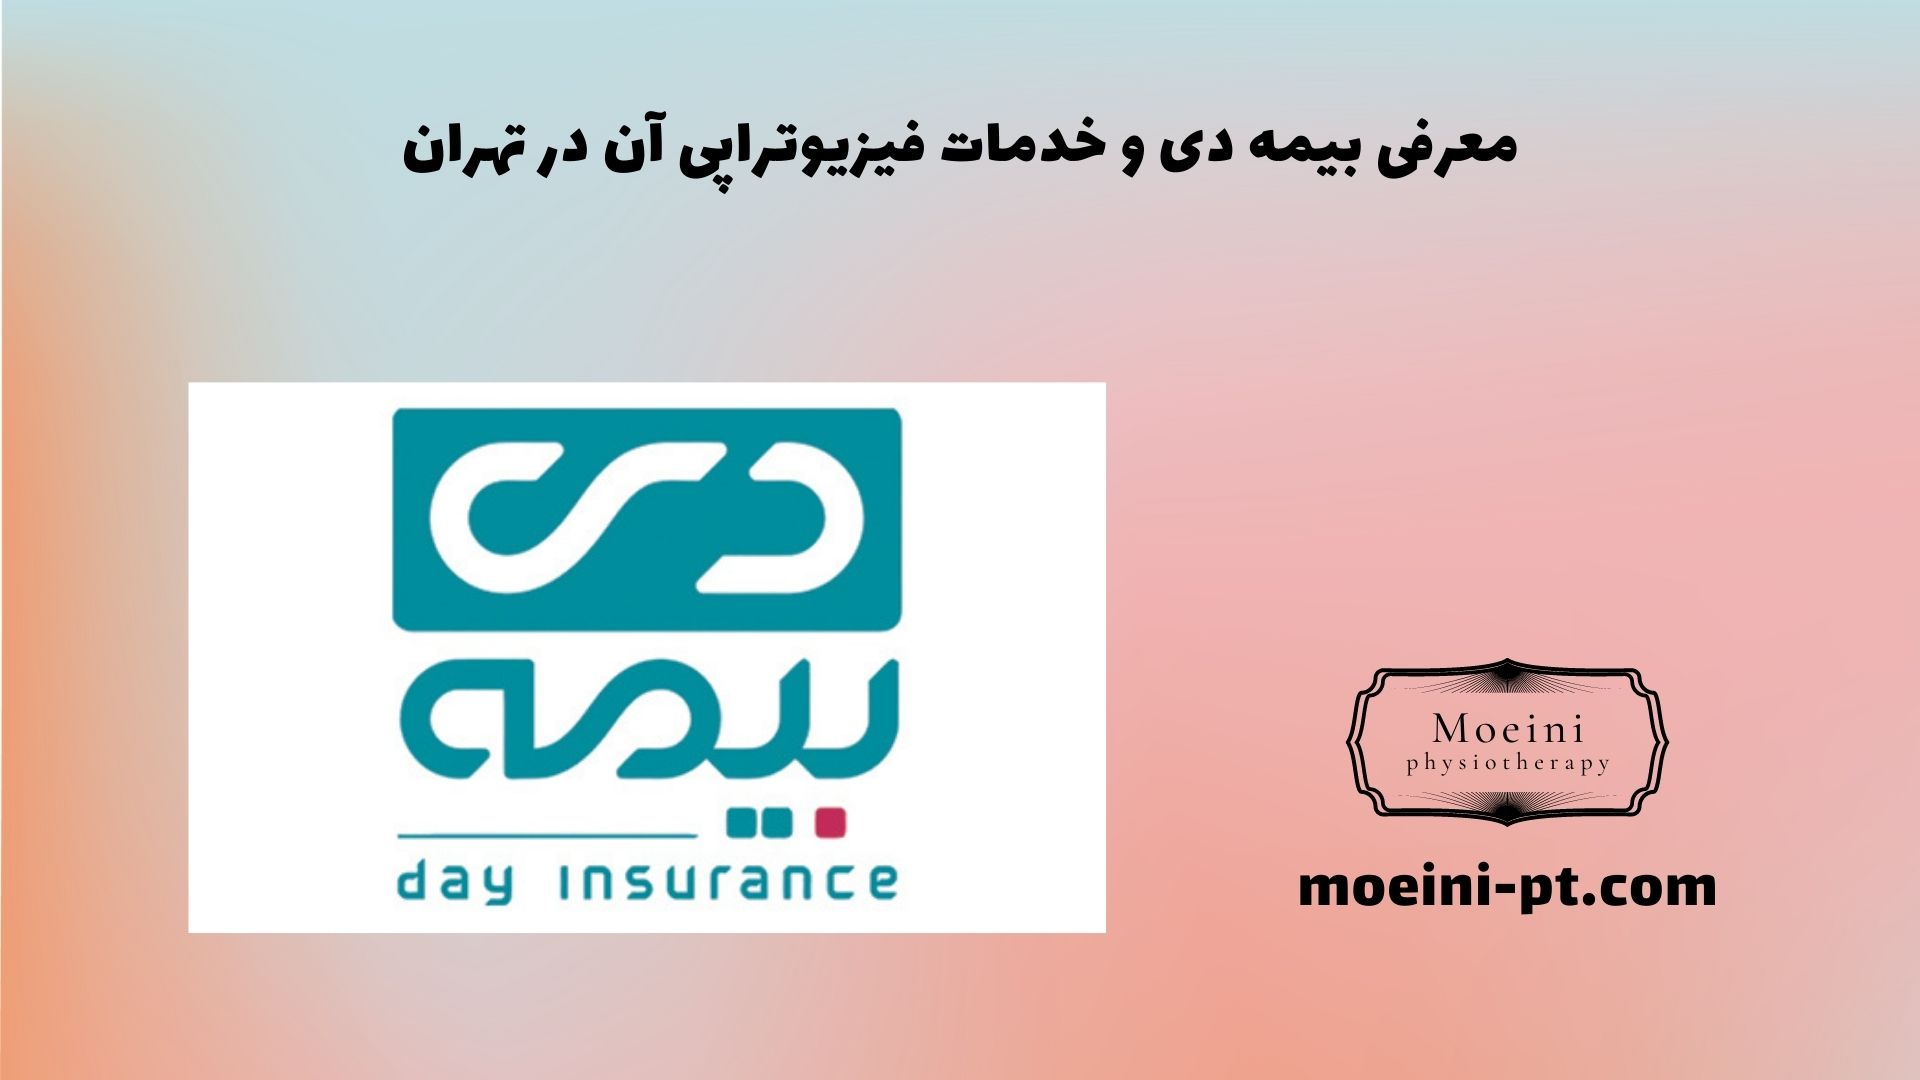 معرفی بیمه دی و خدمات فیزیوتراپی آن در تهران